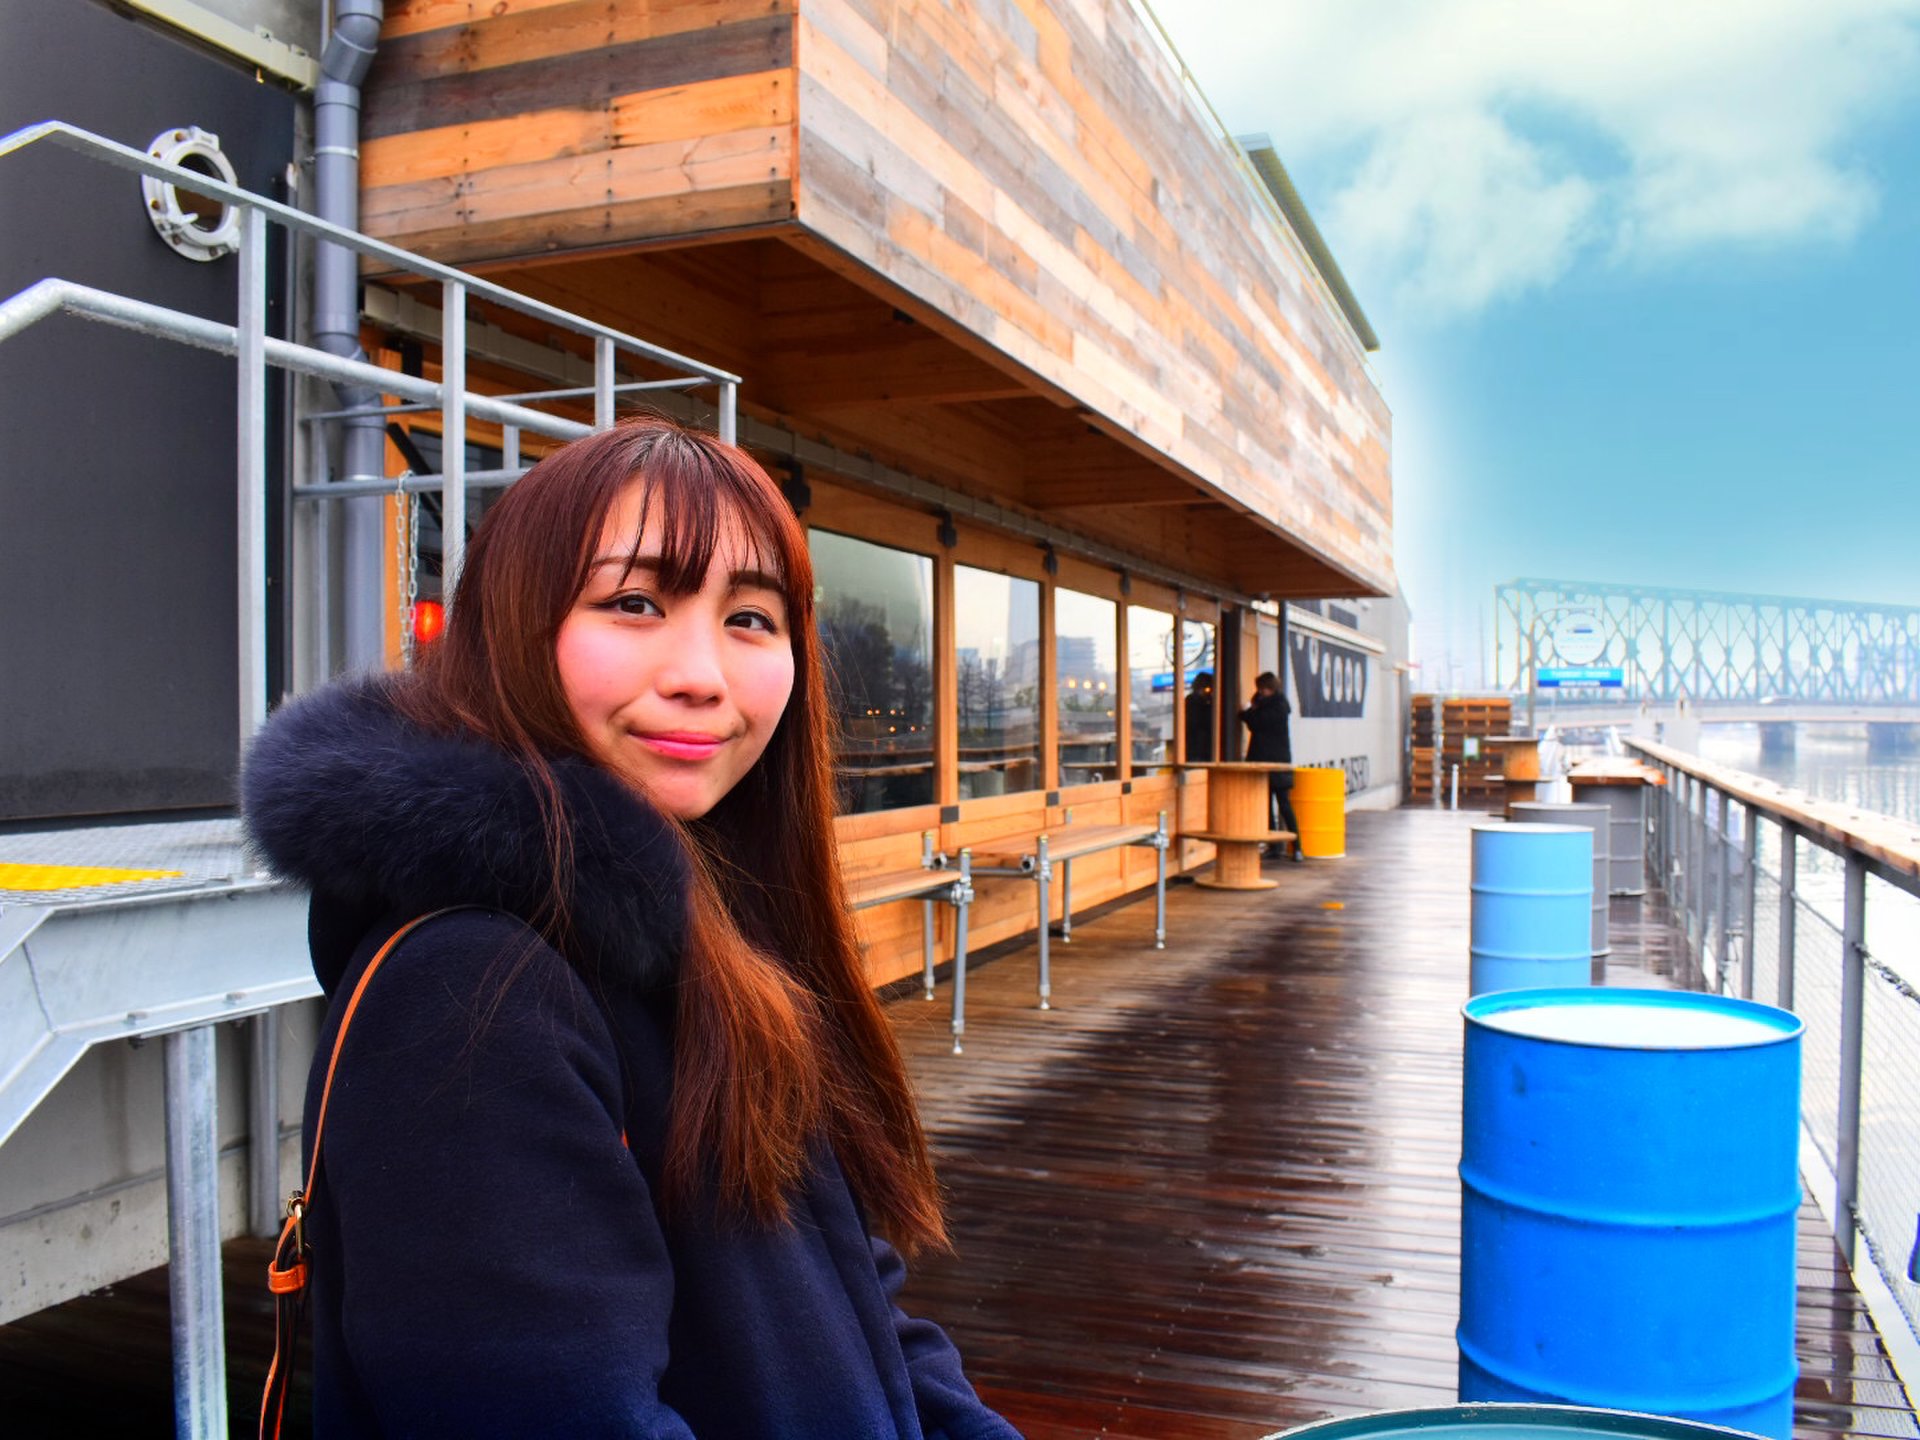 大阪京セラ近くに新たなランドマークが誕生！タグボート大正でモーニングにランチ・ディナーを楽しもう♡